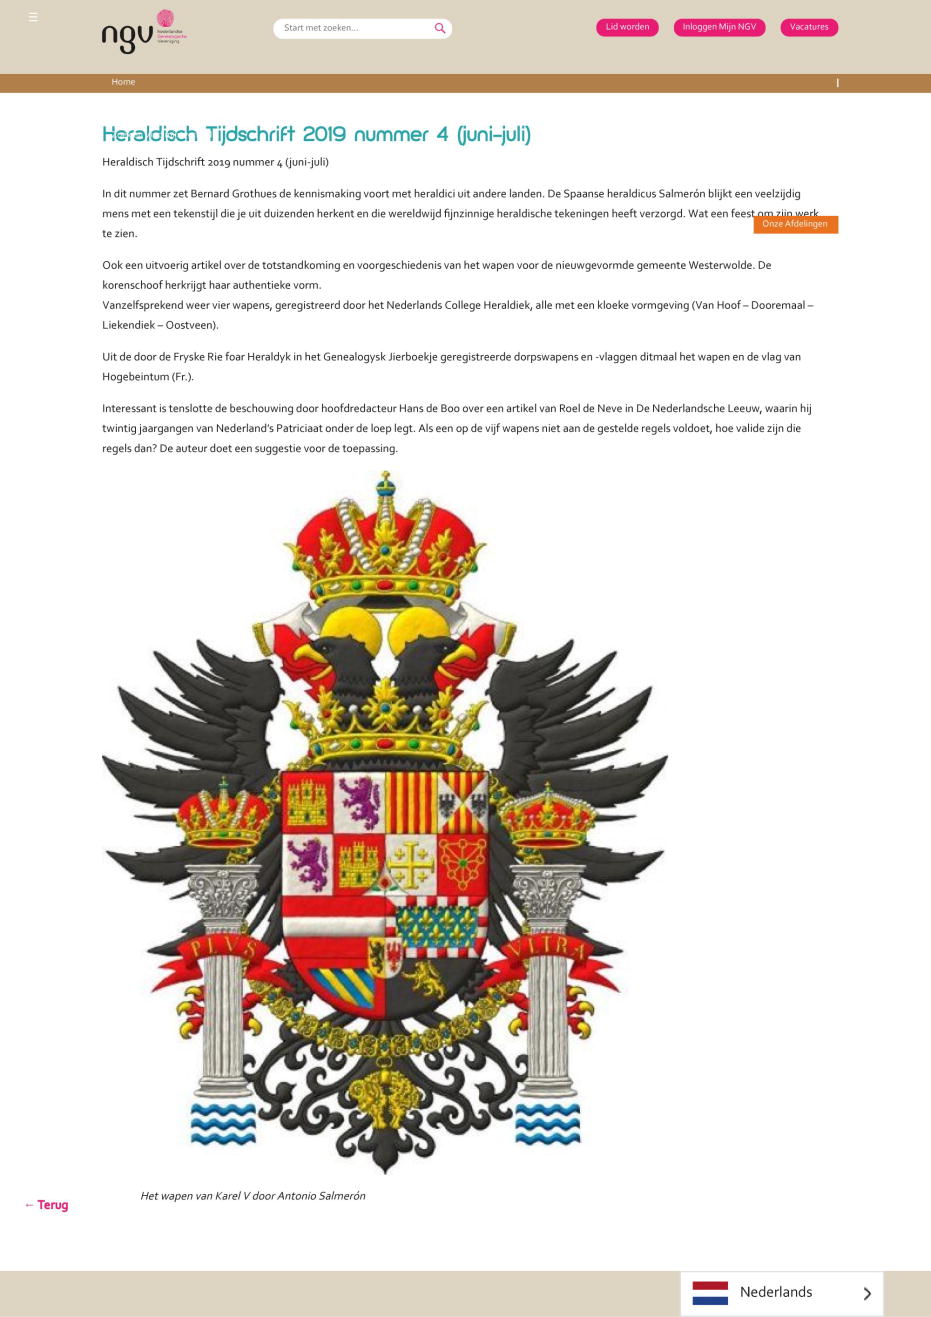 Publicado en su web: Revista periódica para el estudio de los escudos de armas